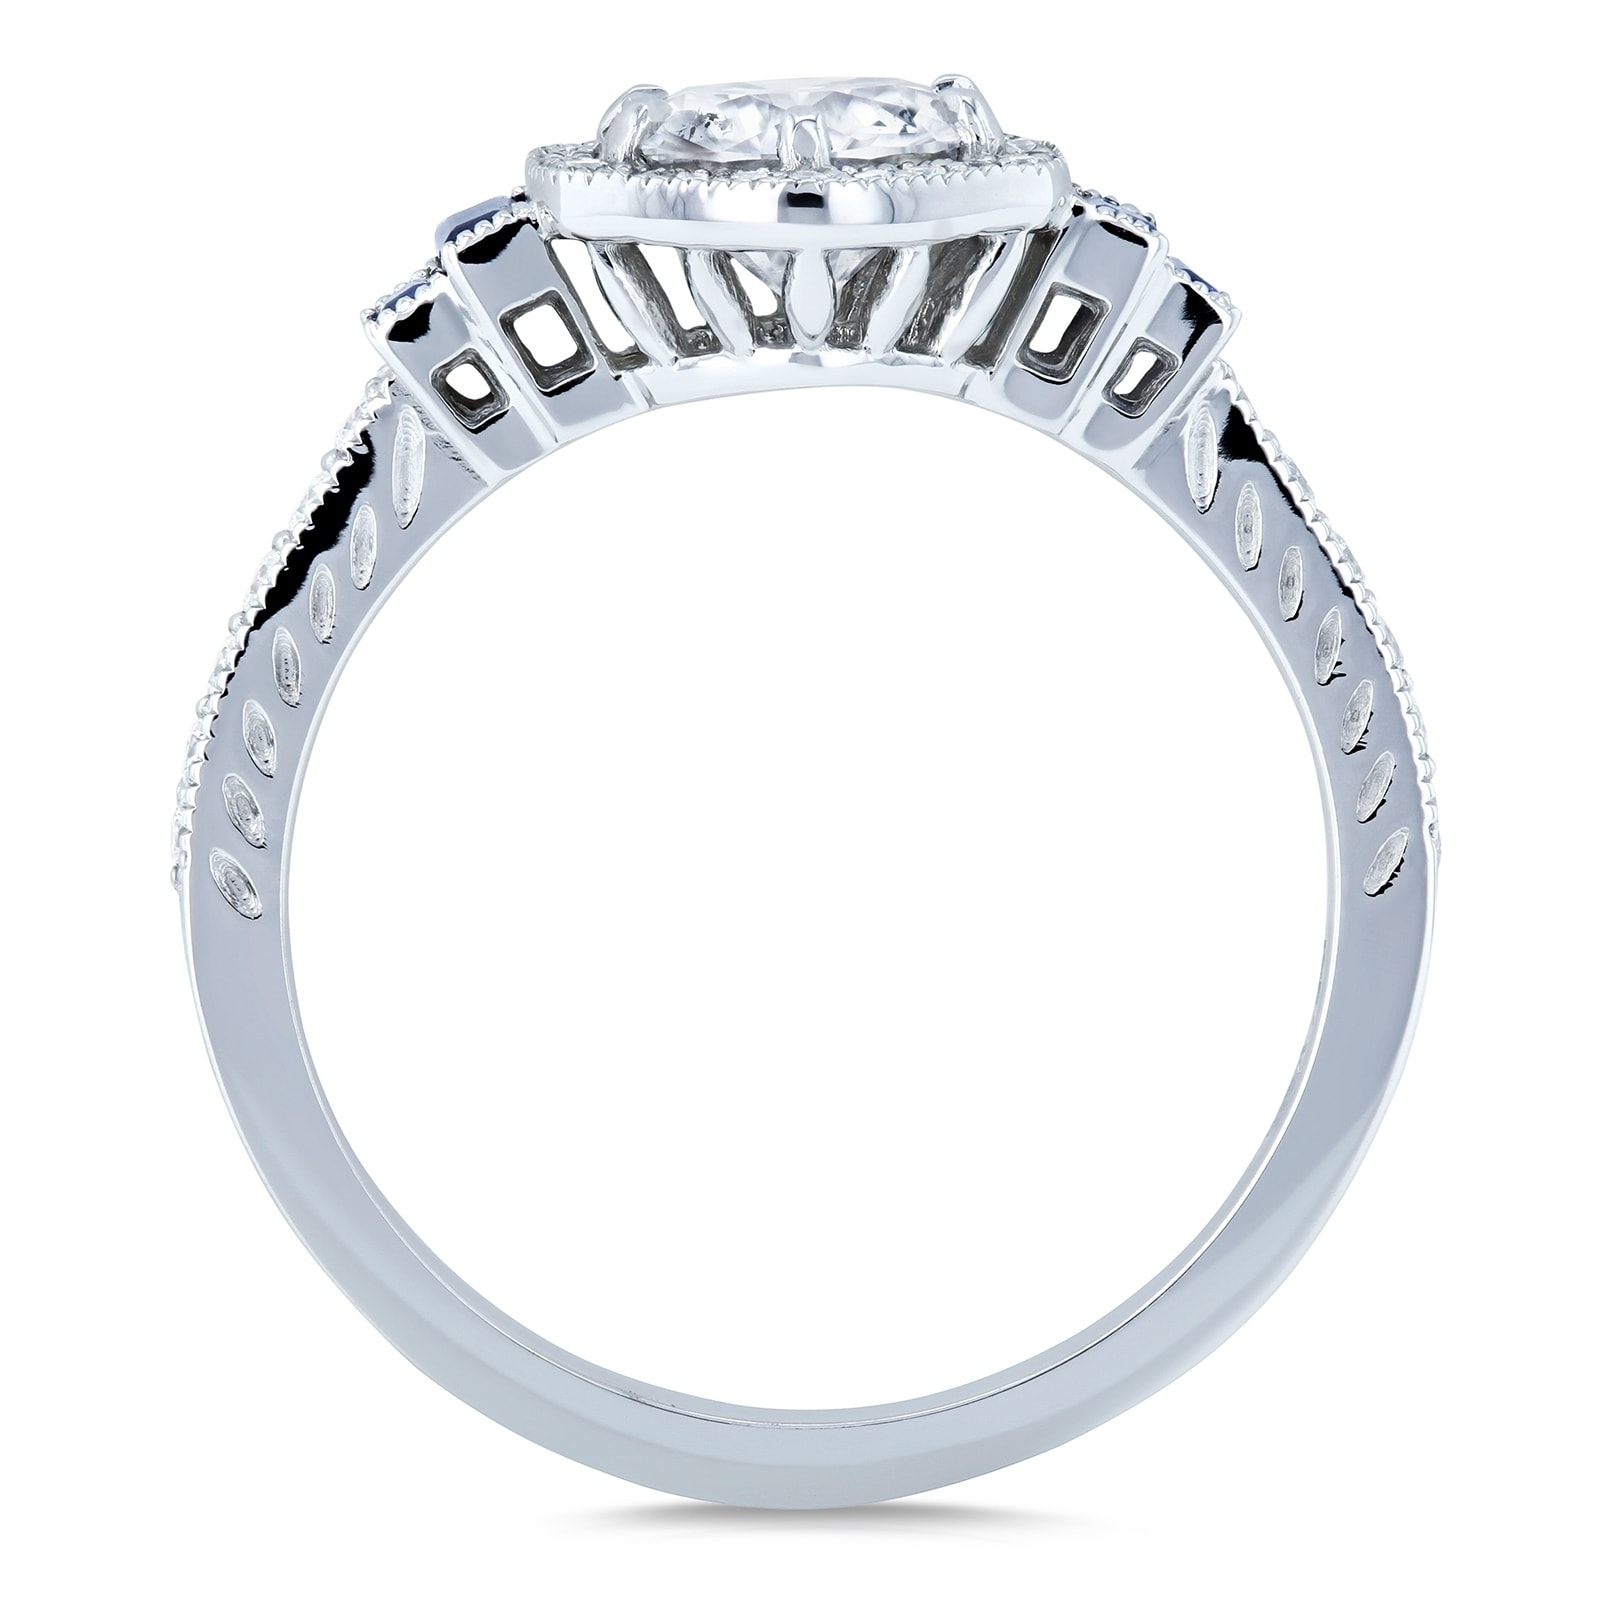 美しい 婚約指輪 結婚指輪 セットリング 安い ダイヤモンド プラチナ